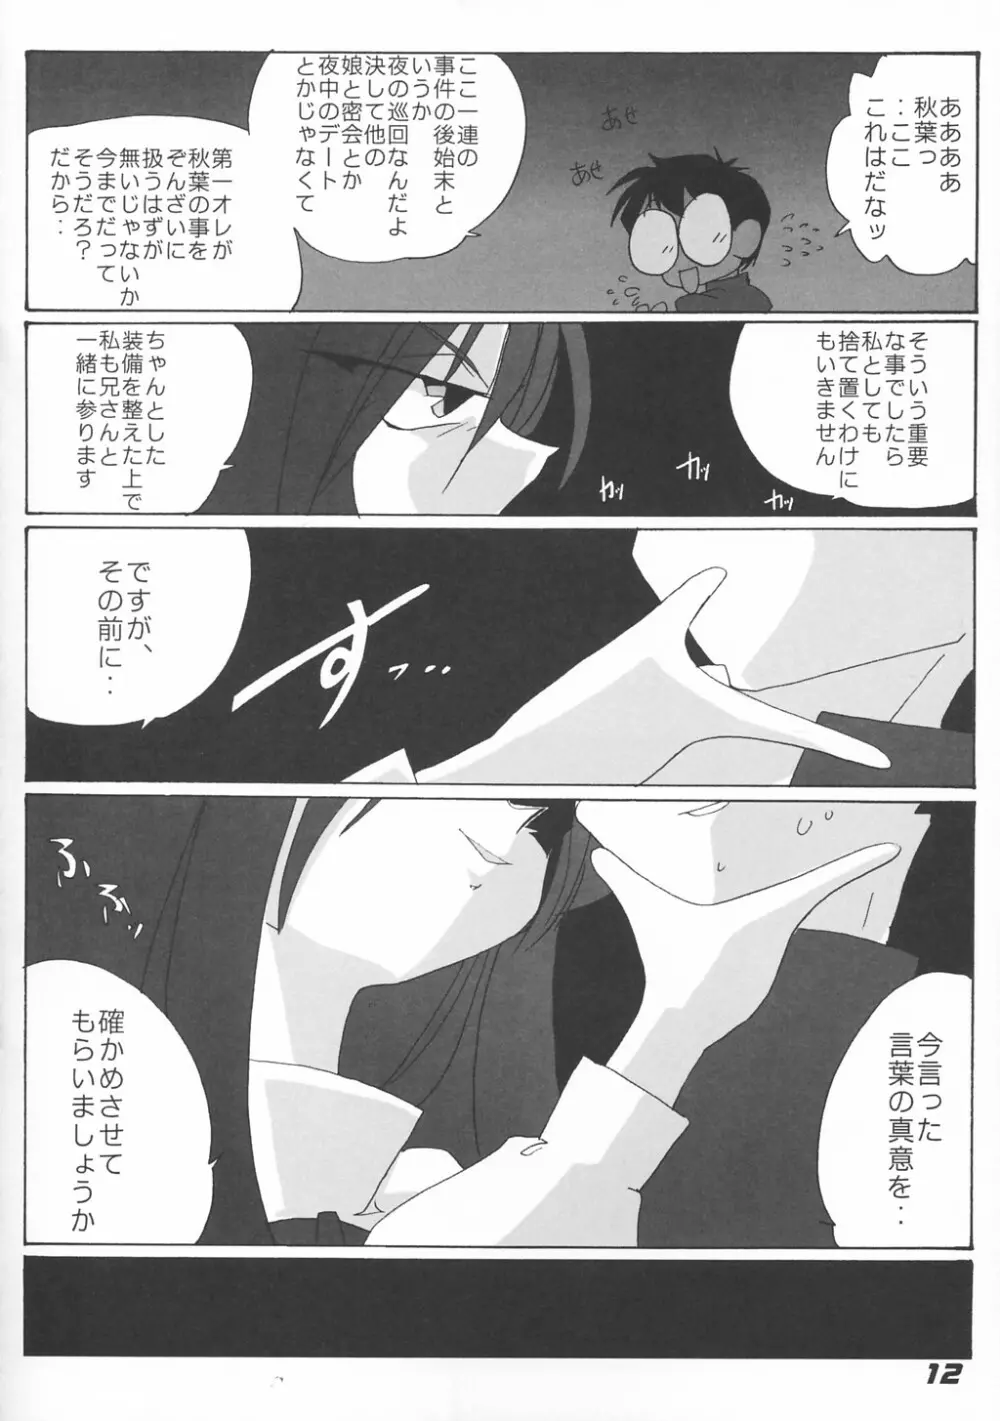 [喜栄座cmp] N+ [N-Plus] #7 (月姫) 14ページ